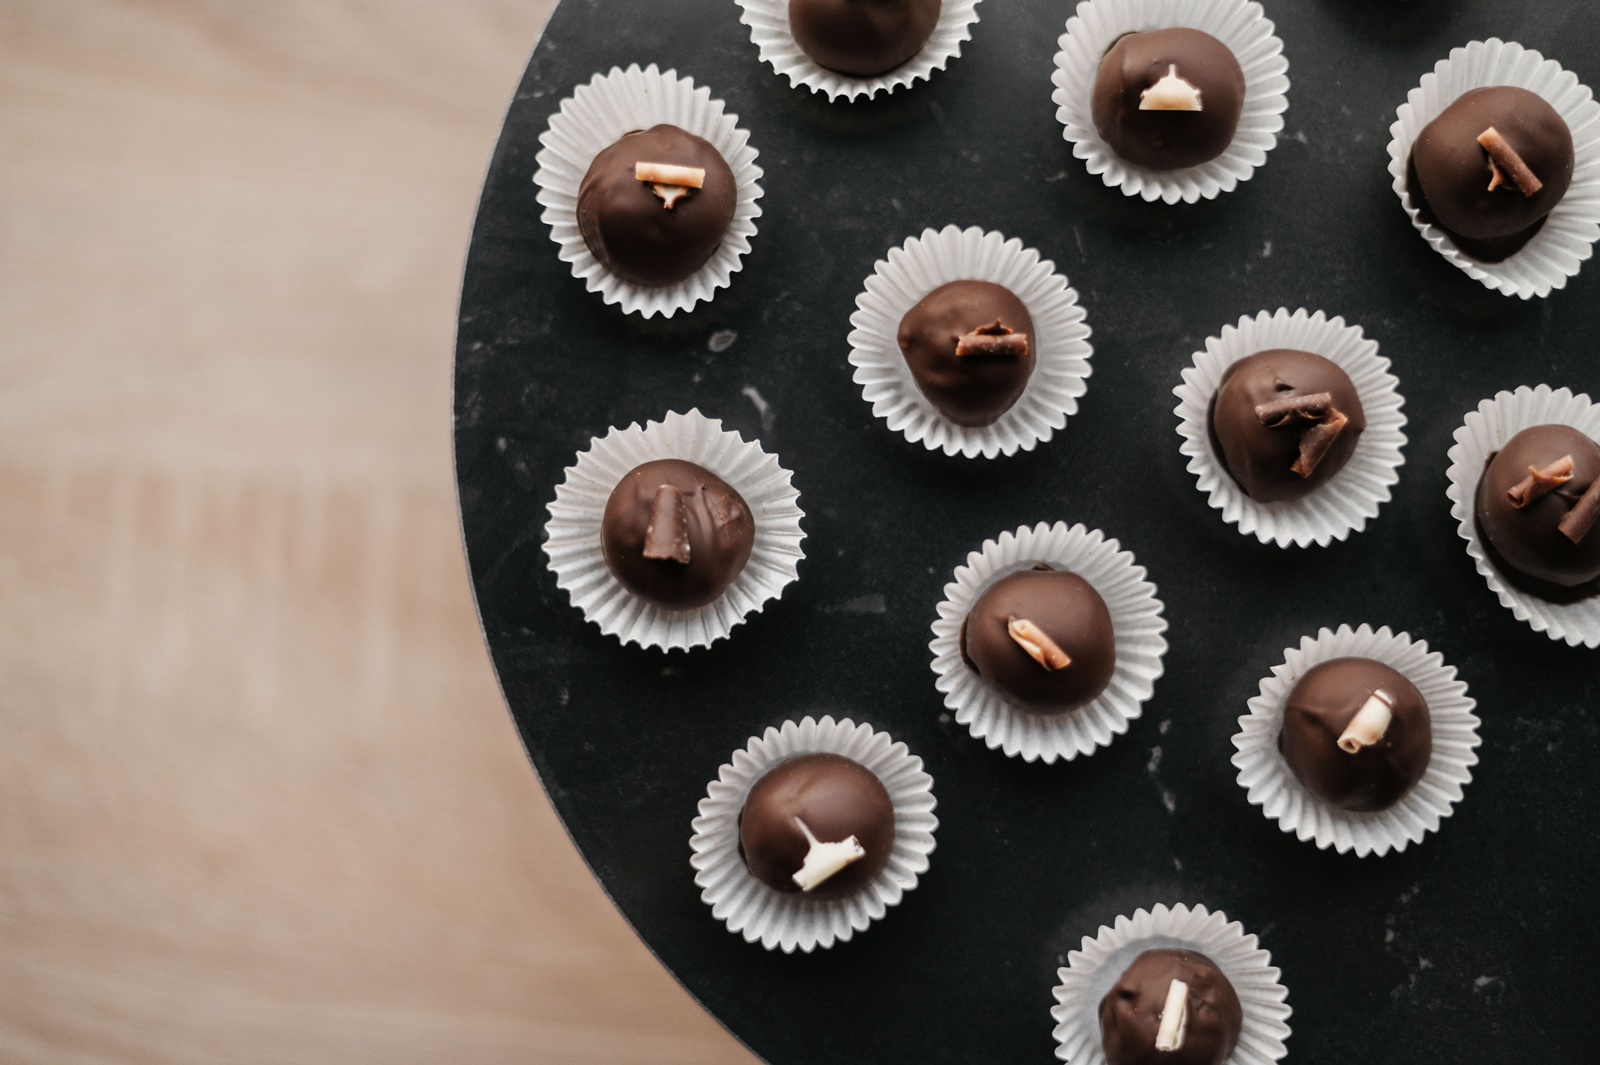 Σοκολατάκια με ξηρούς καρπούς χωρίς ζάχαρη: Εύκολη συνταγή, τέλειο αποτέλεσμα